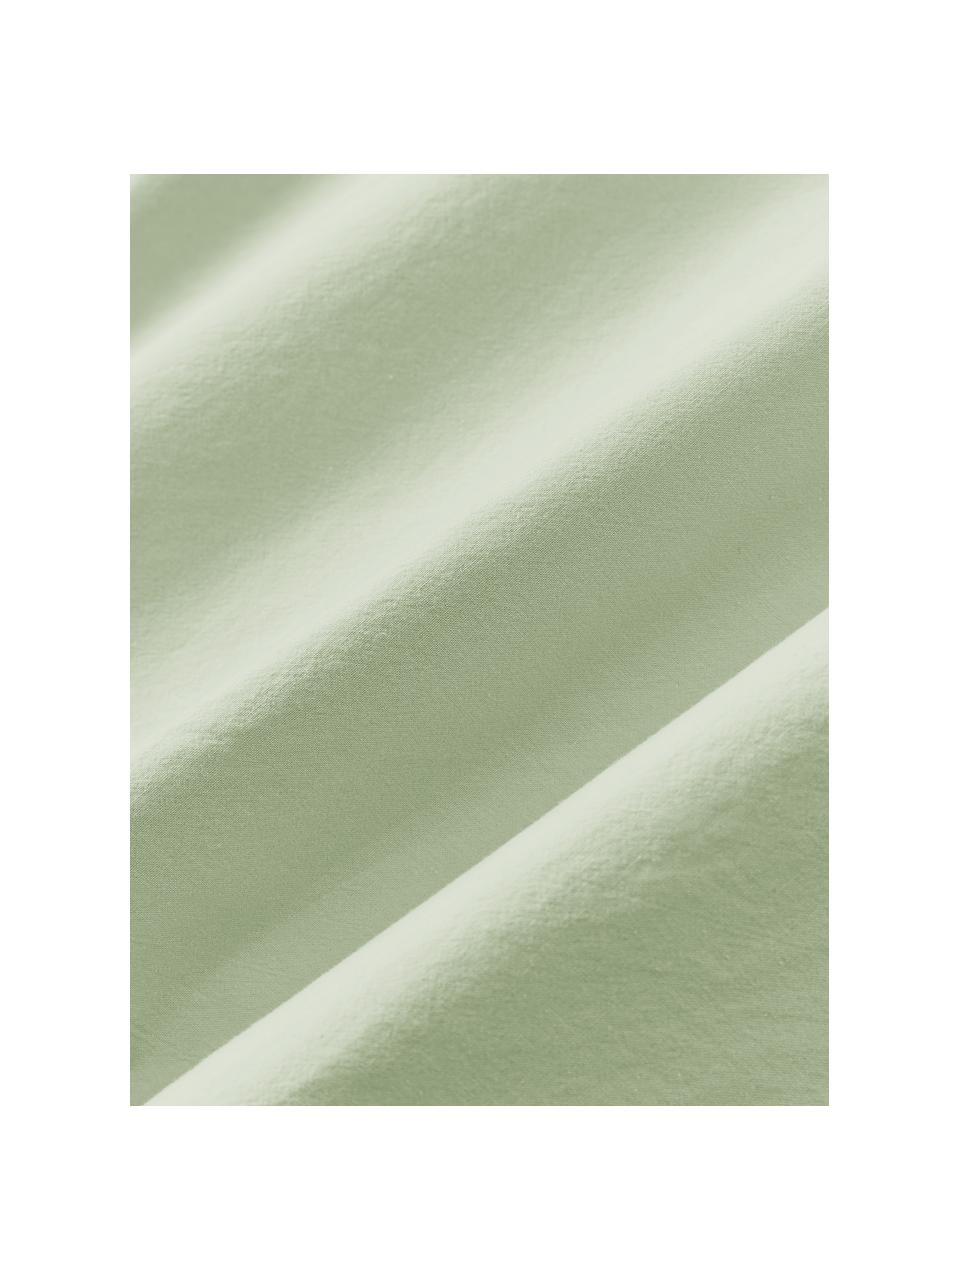 Bavlnená obliečka na paplón Darlyn, 100 %  bavlna
Hustota vlákna 150 TC, štandard kvalita

Posteľná bielizeň z bavlny je príjemná na dotyk, dobre absorbuje vlhkosť a je vhodná pre alergikov

Látka bola podrobená špeciálnemu procesu „Softwash”, ktorý zabezpečuje nepravidelný vypraný vzhľad, je mäkká, pružná a má prirodzený krčivý vzhľad, ktorý nevyžaduje žehlenie a pôsobí útulne

Materiál použitý v tomto produkte bol testovaný na škodlivé látky a certifikovaný podľa STANDARD 100 od OEKO-TEX®, 4265CIT, CITEVE., Šalviovozelená, Š 200 x D 200 cm